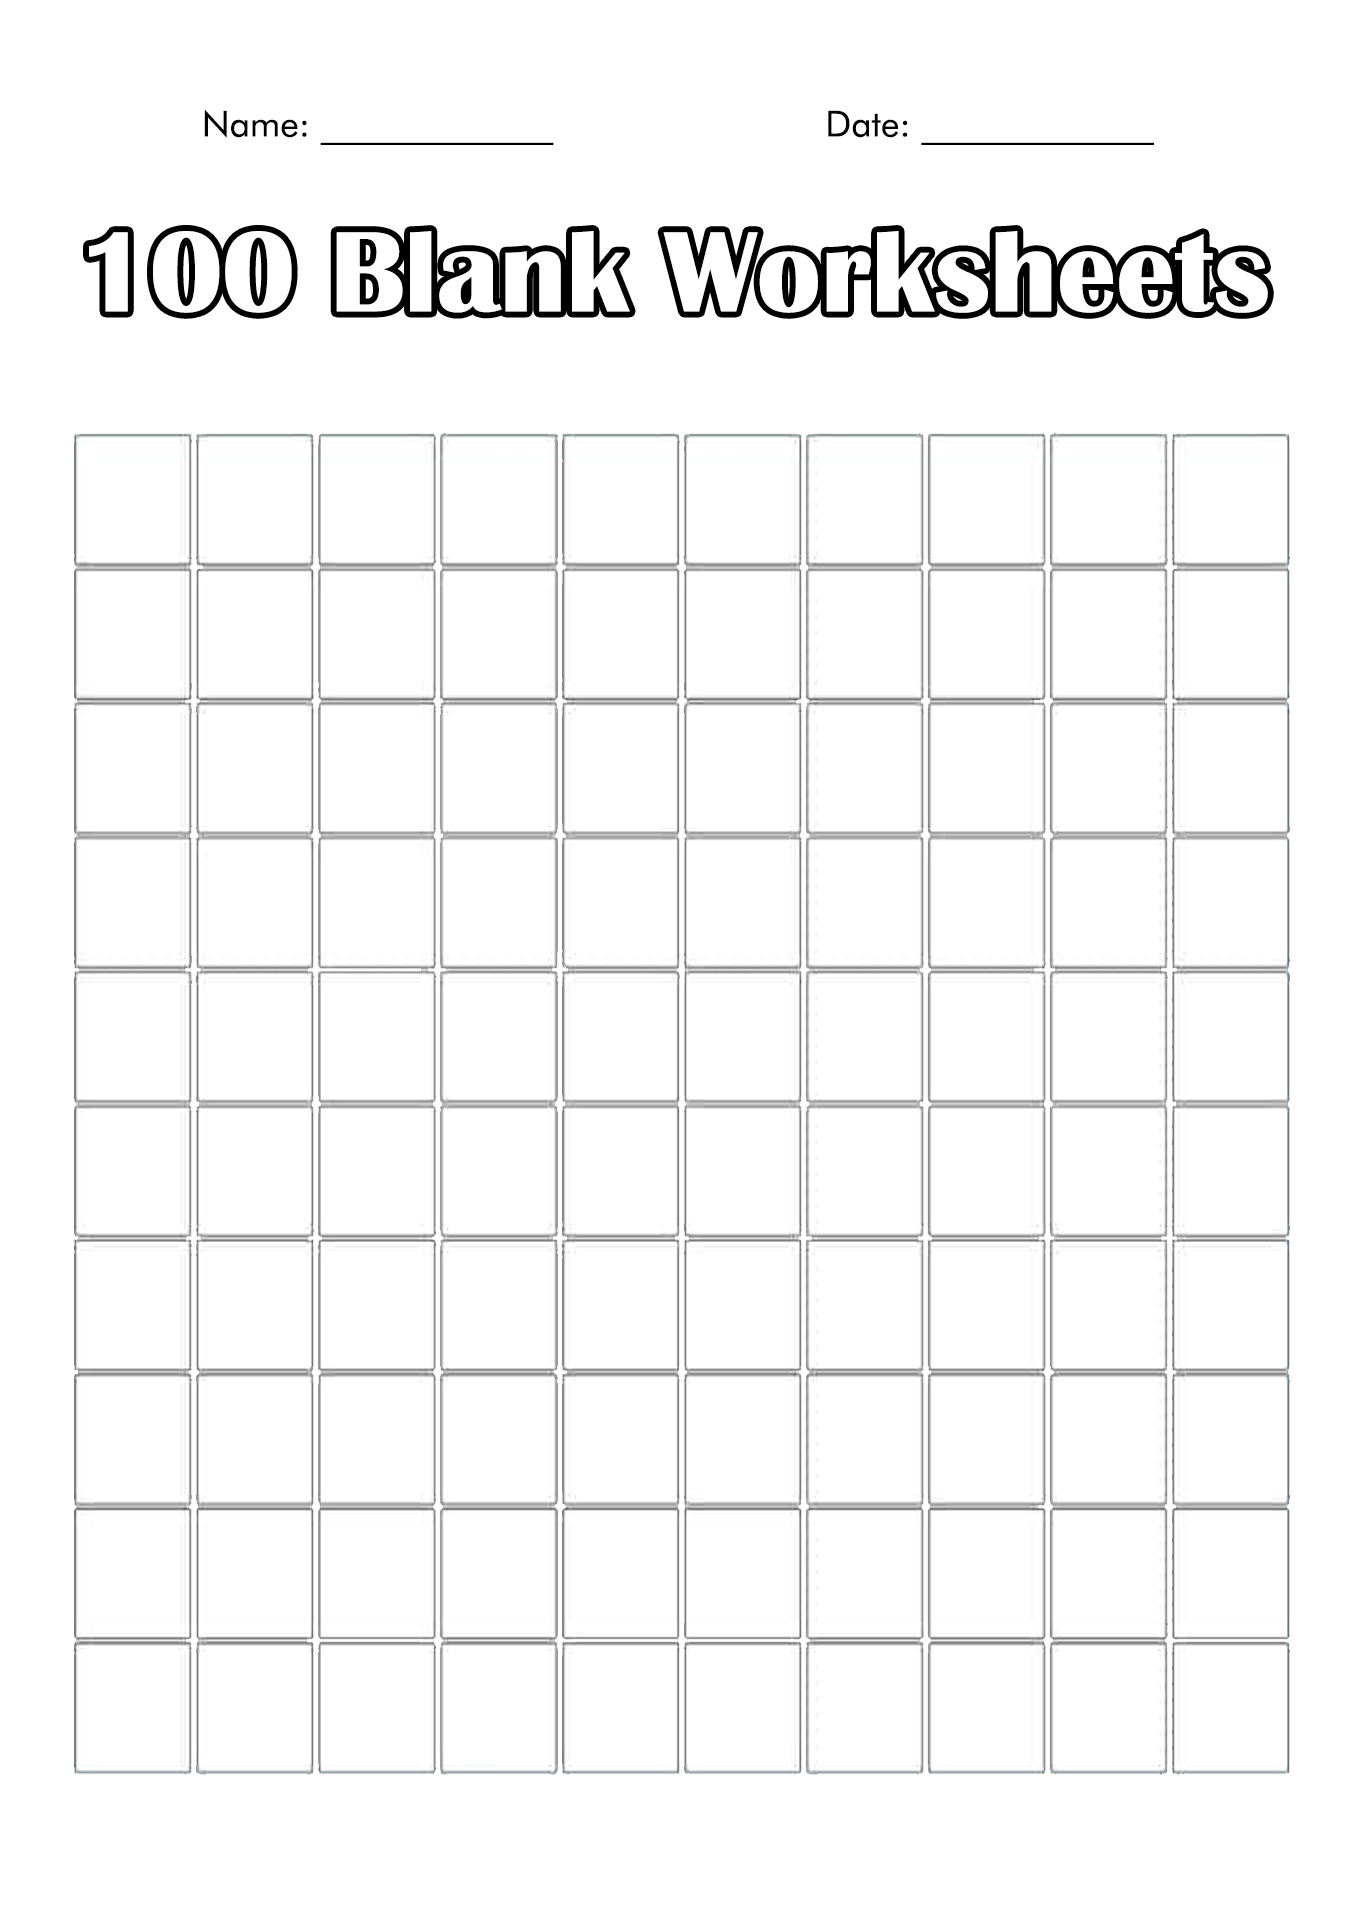 free-printable-blank-100-chart-printable-templates